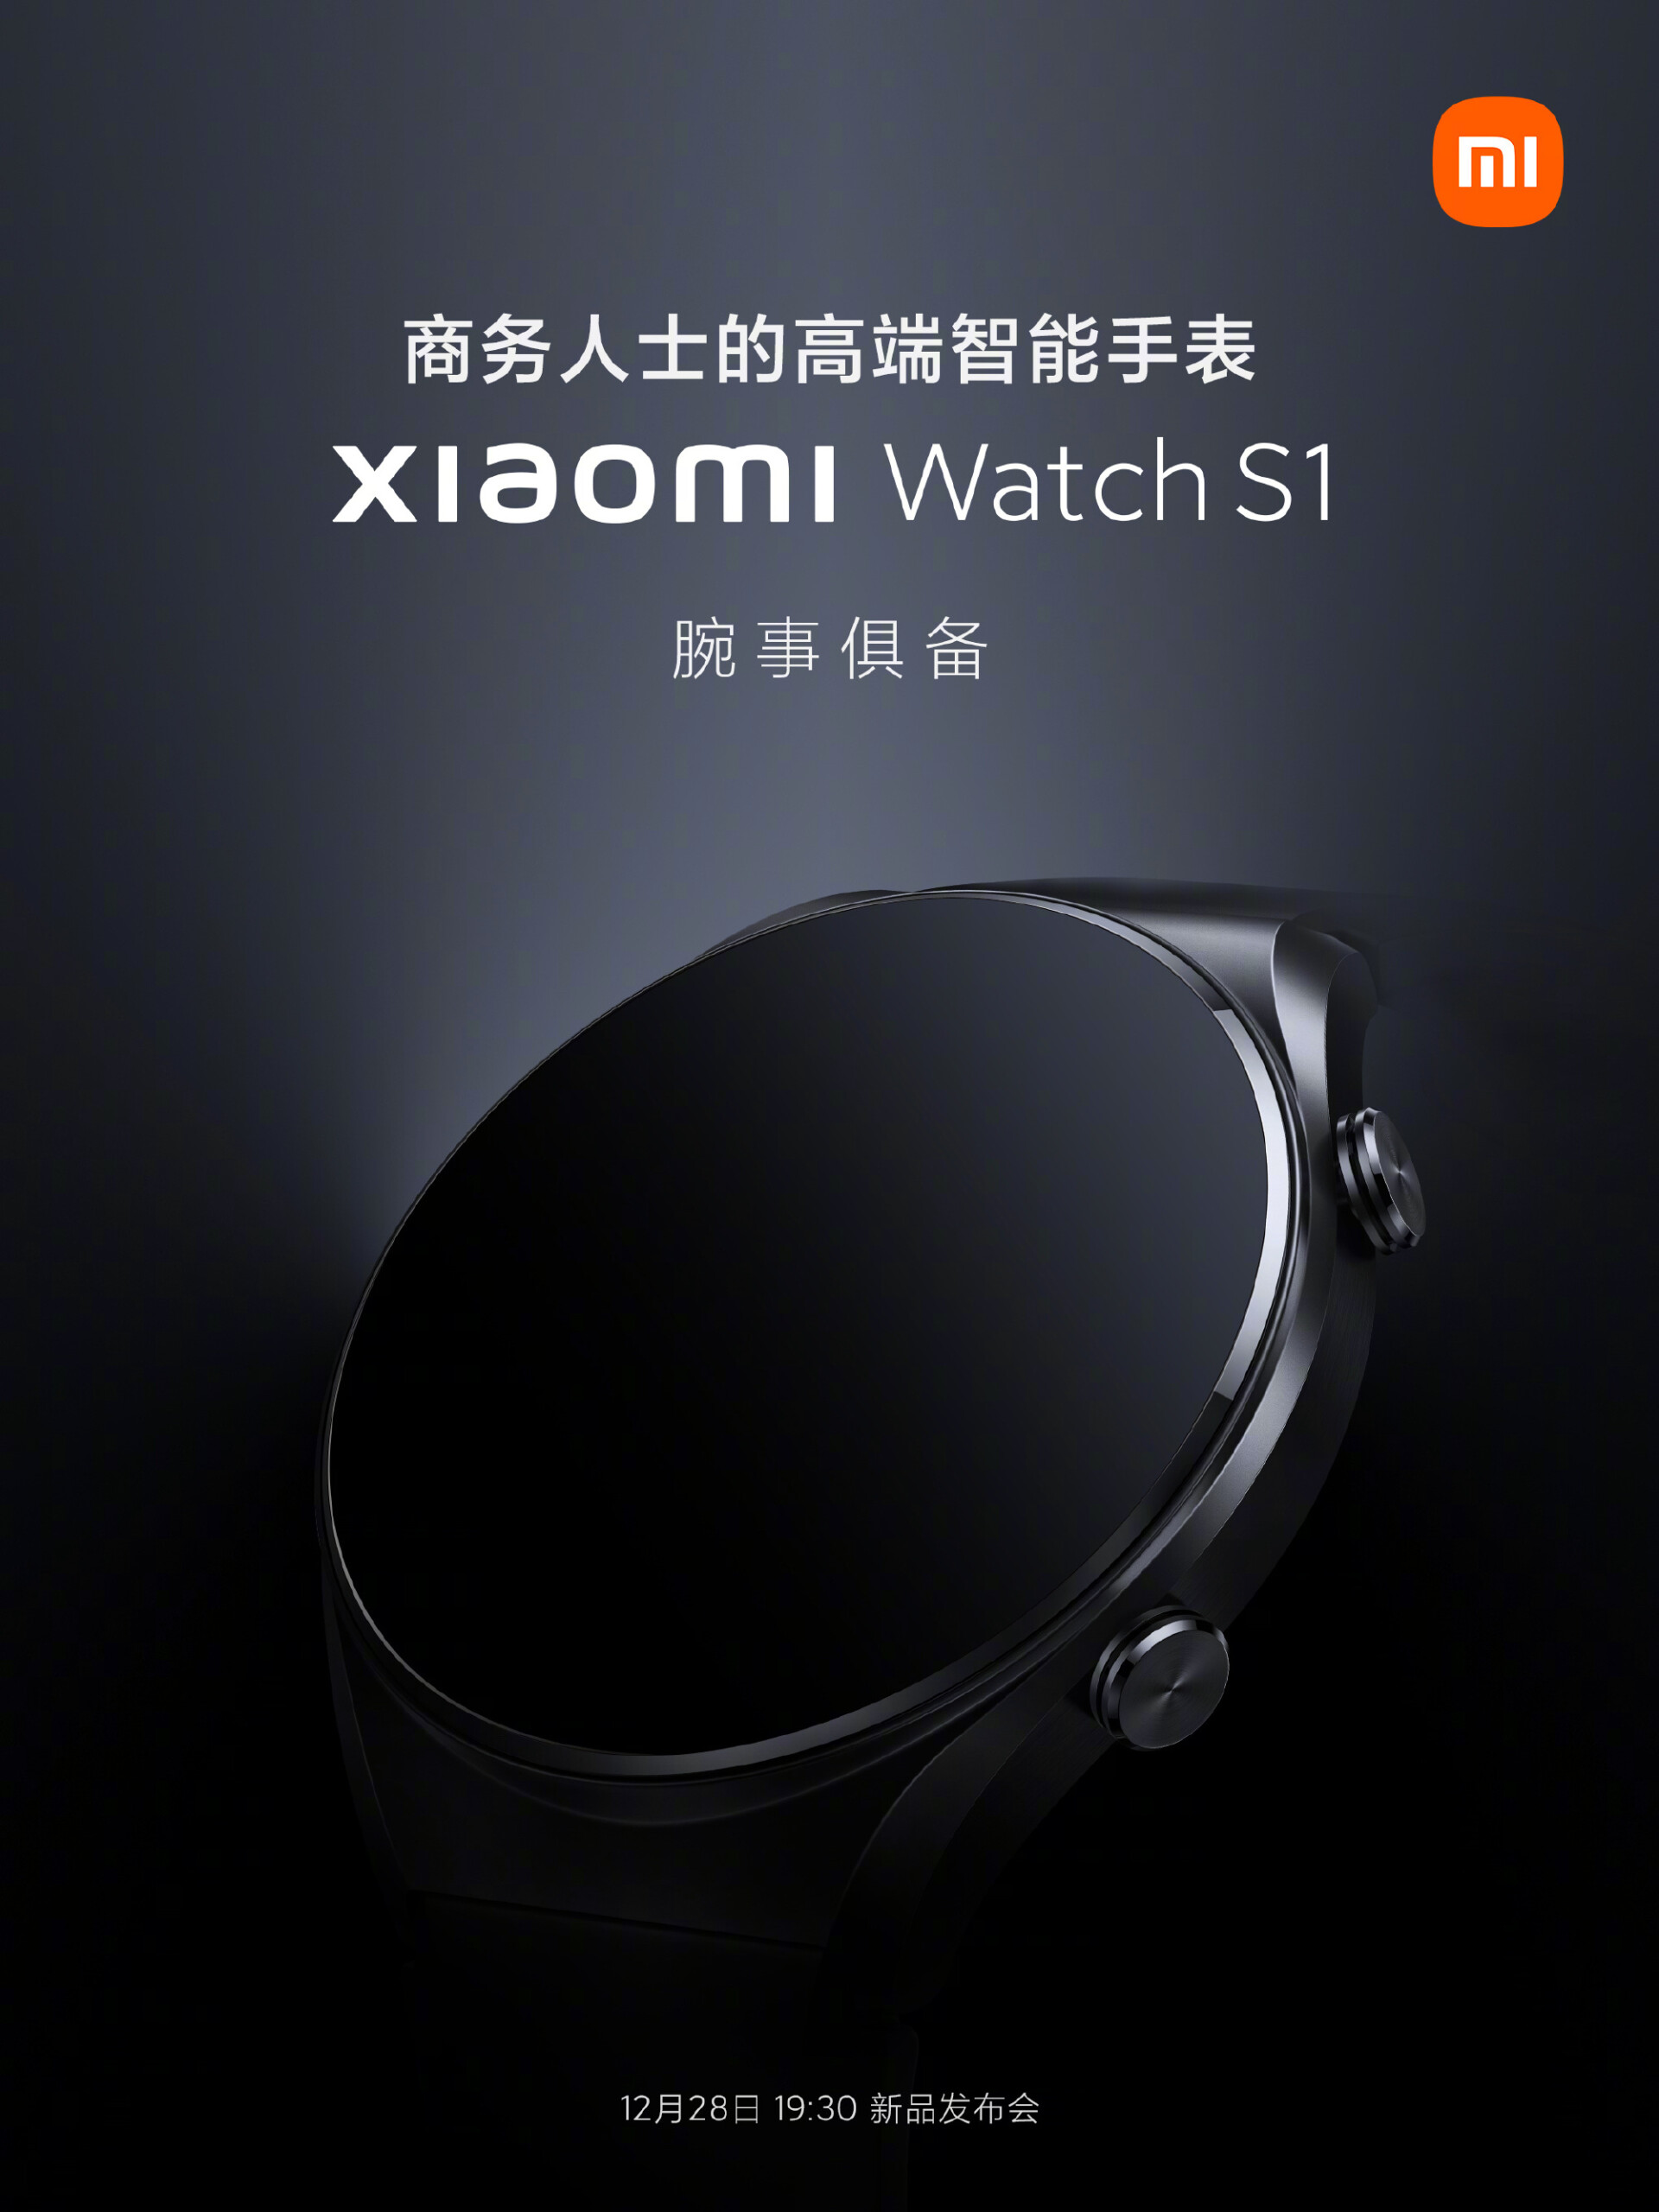 La Xiaomi Watch S1